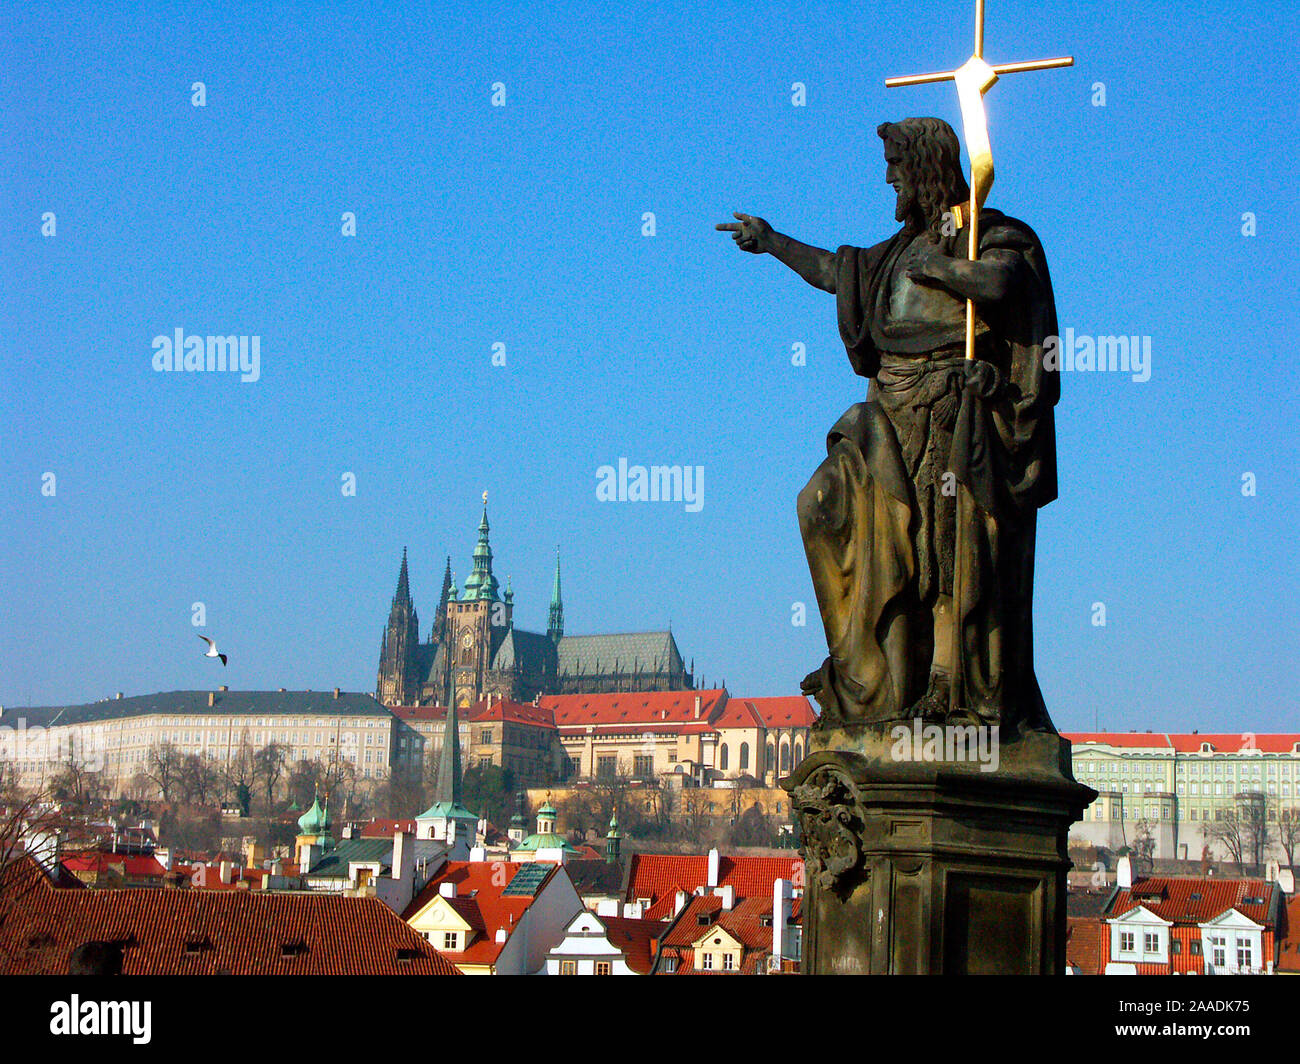 Europa, Prag, Blick von der Karlsbruecke zum Hradschin, im Vordergrund Apostel, Foto Stock